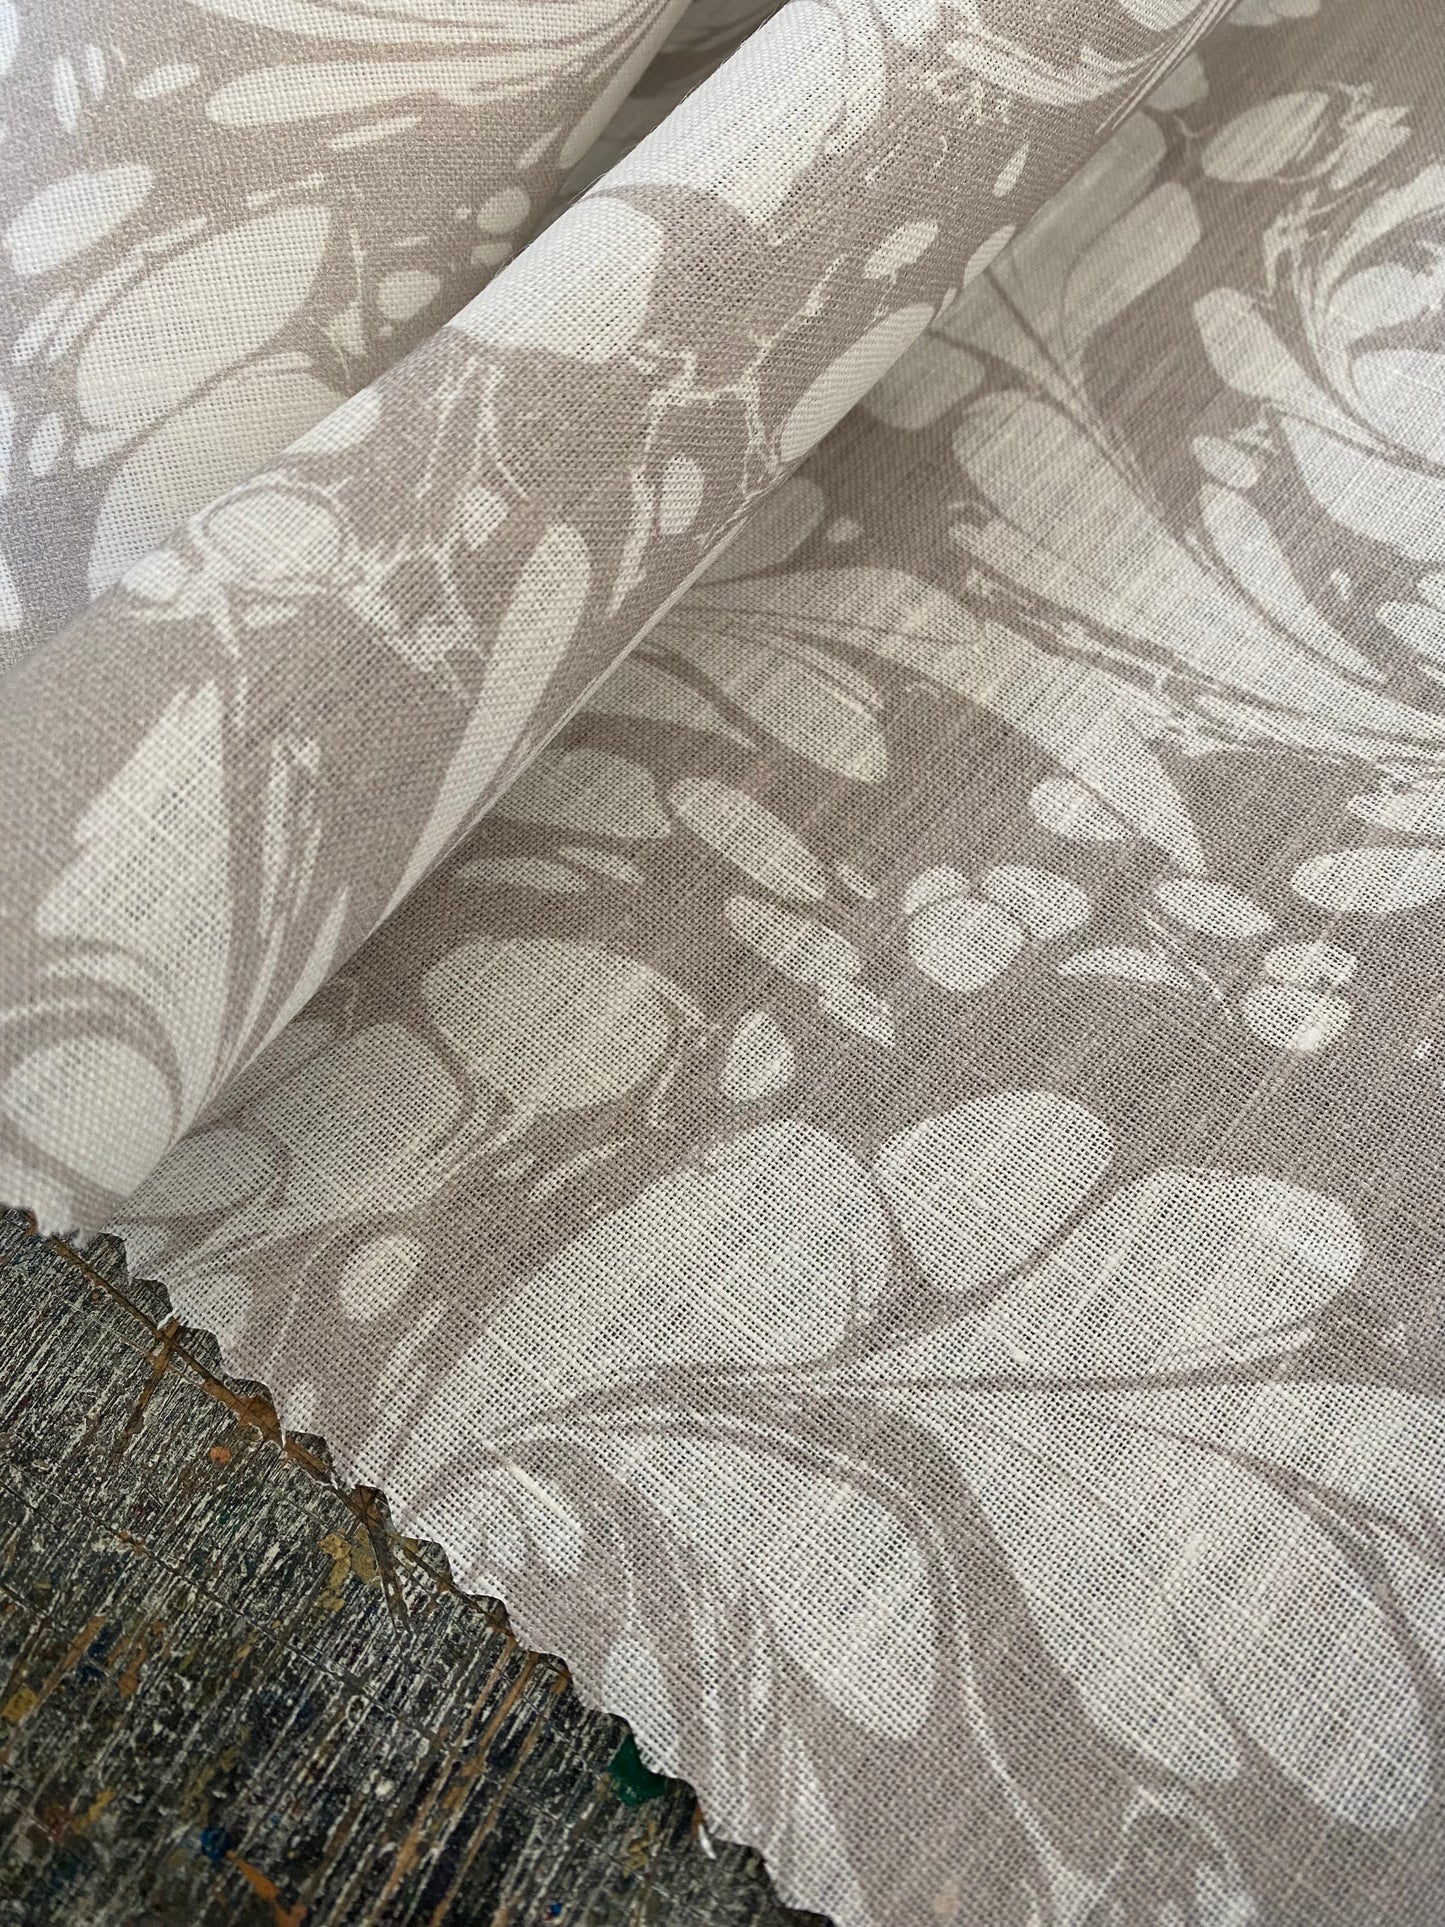 Printed Fabric - 'Flourish' Col: Silver Ghost - 100% Fine Linen